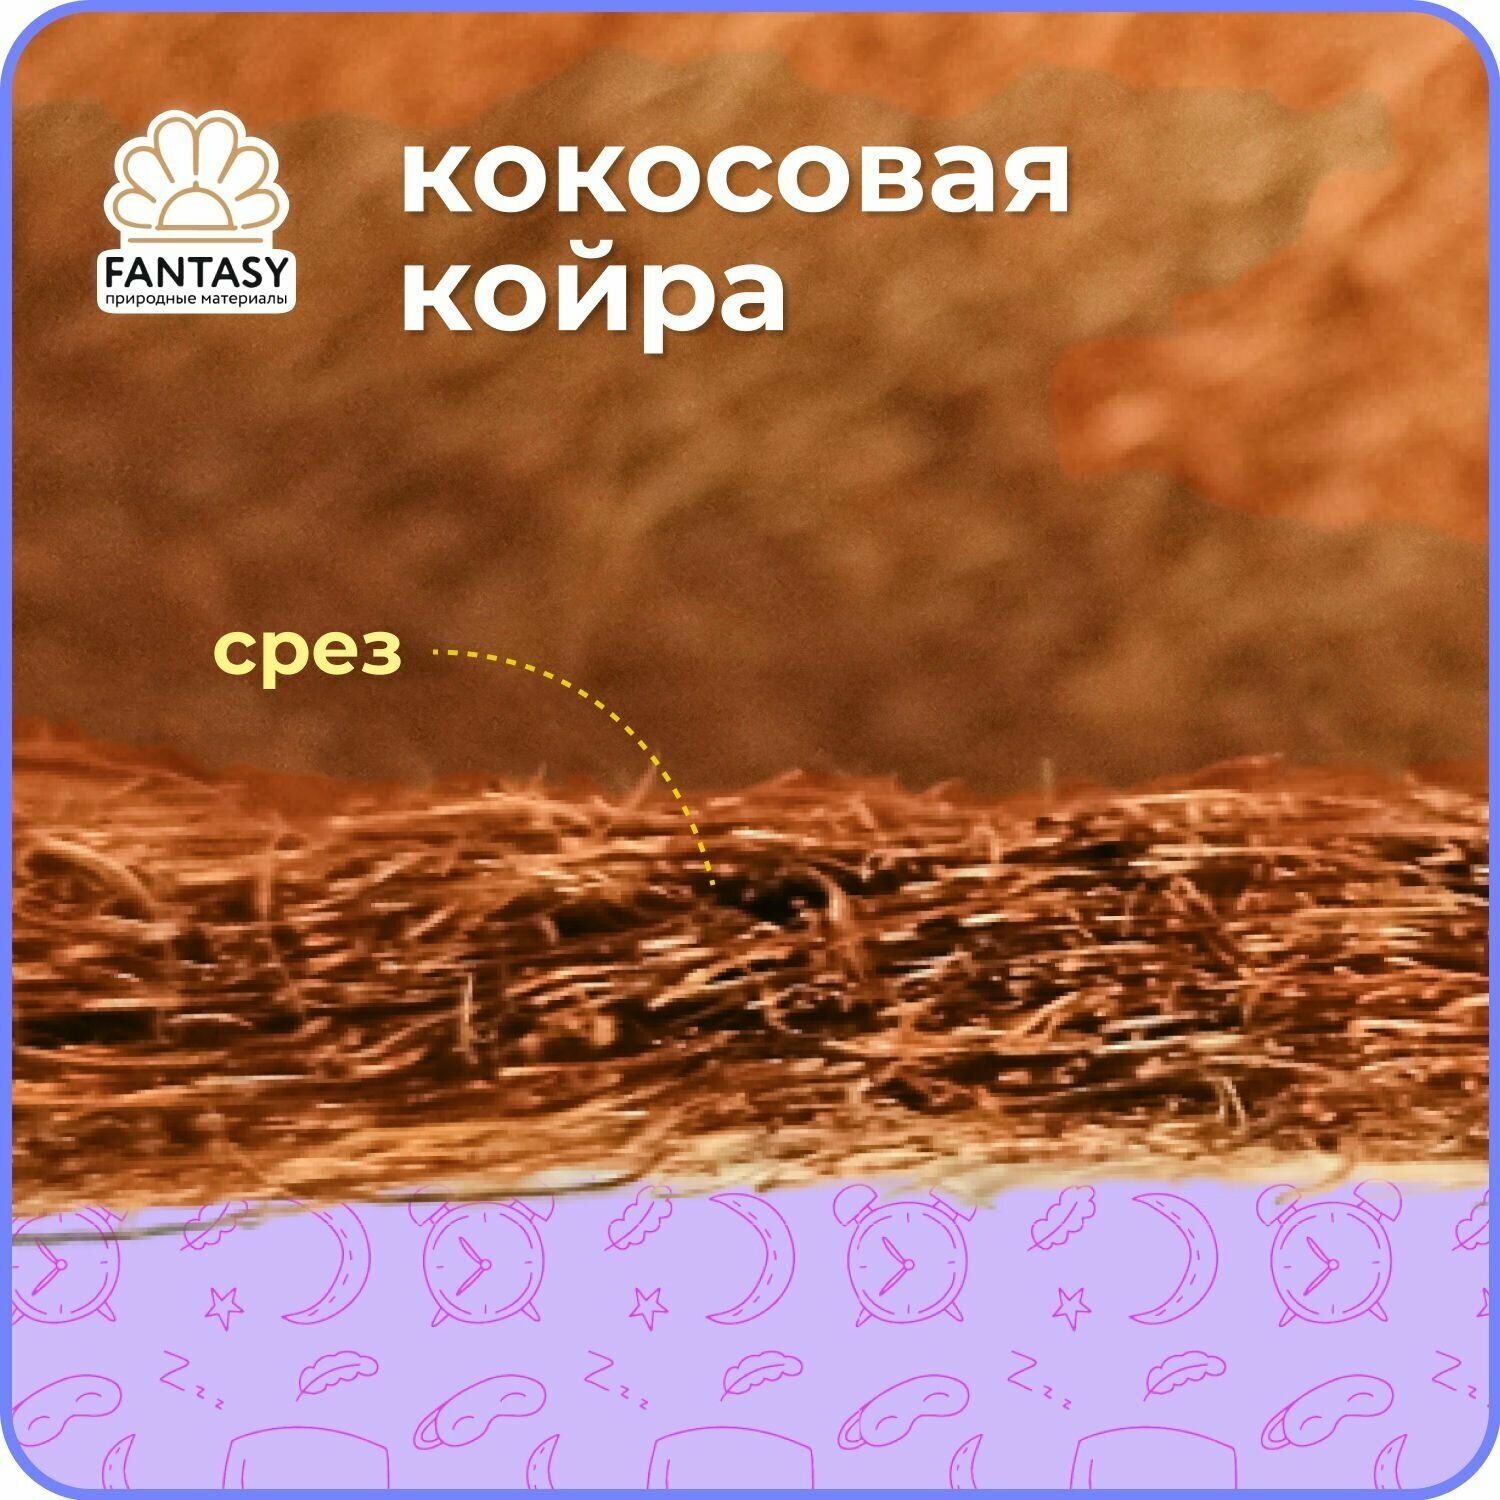 Кокосовая койра FANTASY, наполнитель для матрасов, наматрасников, ортопедических подушек из натурального волокна кокоса, 180х200х1 см - фотография № 3